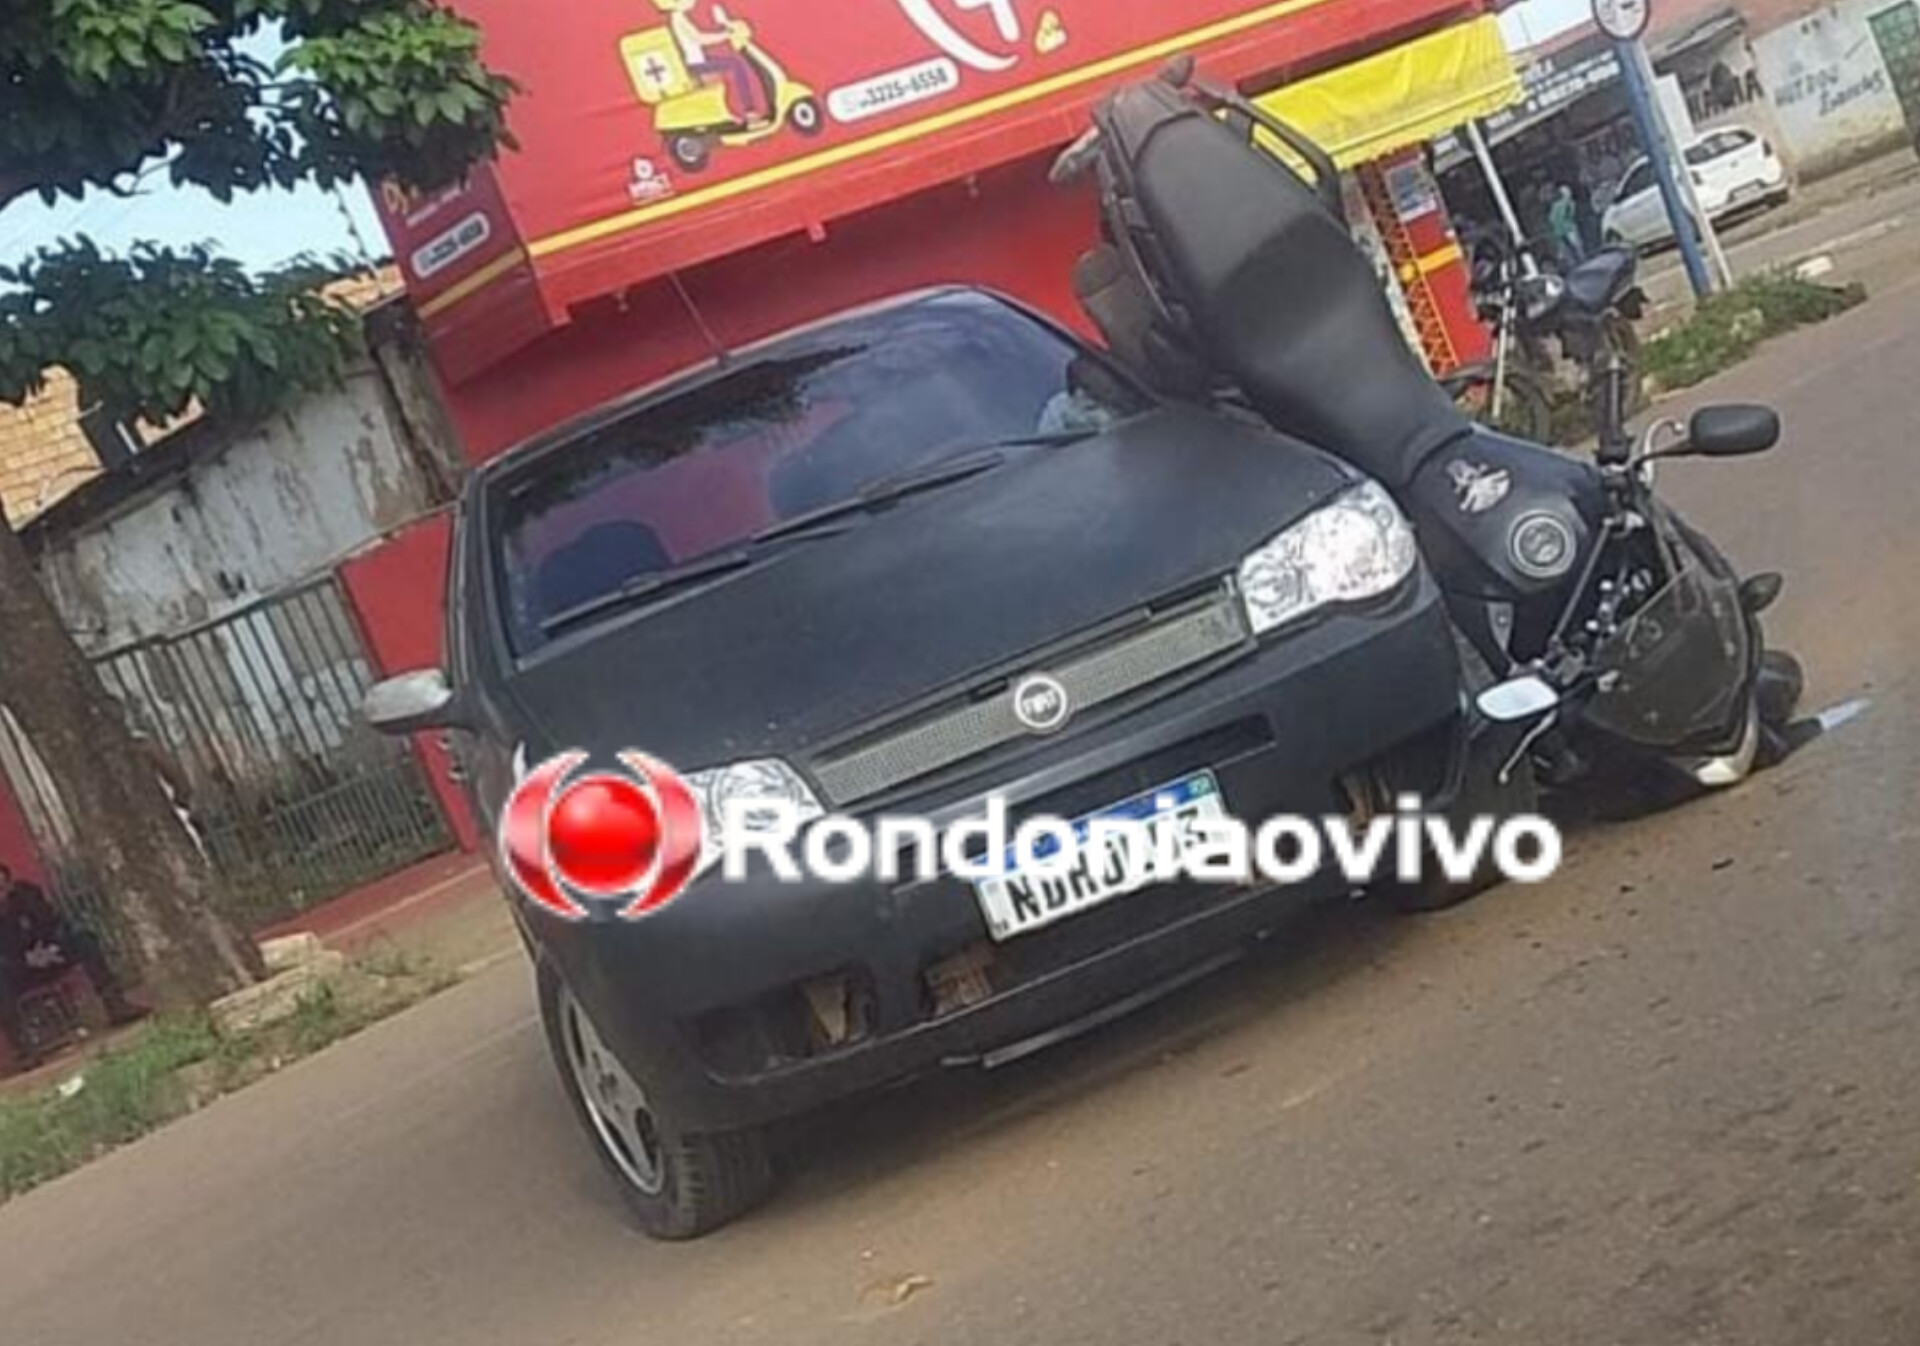 URGENTE: Motocicleta fica engatada em carro após grave acidente na capital 